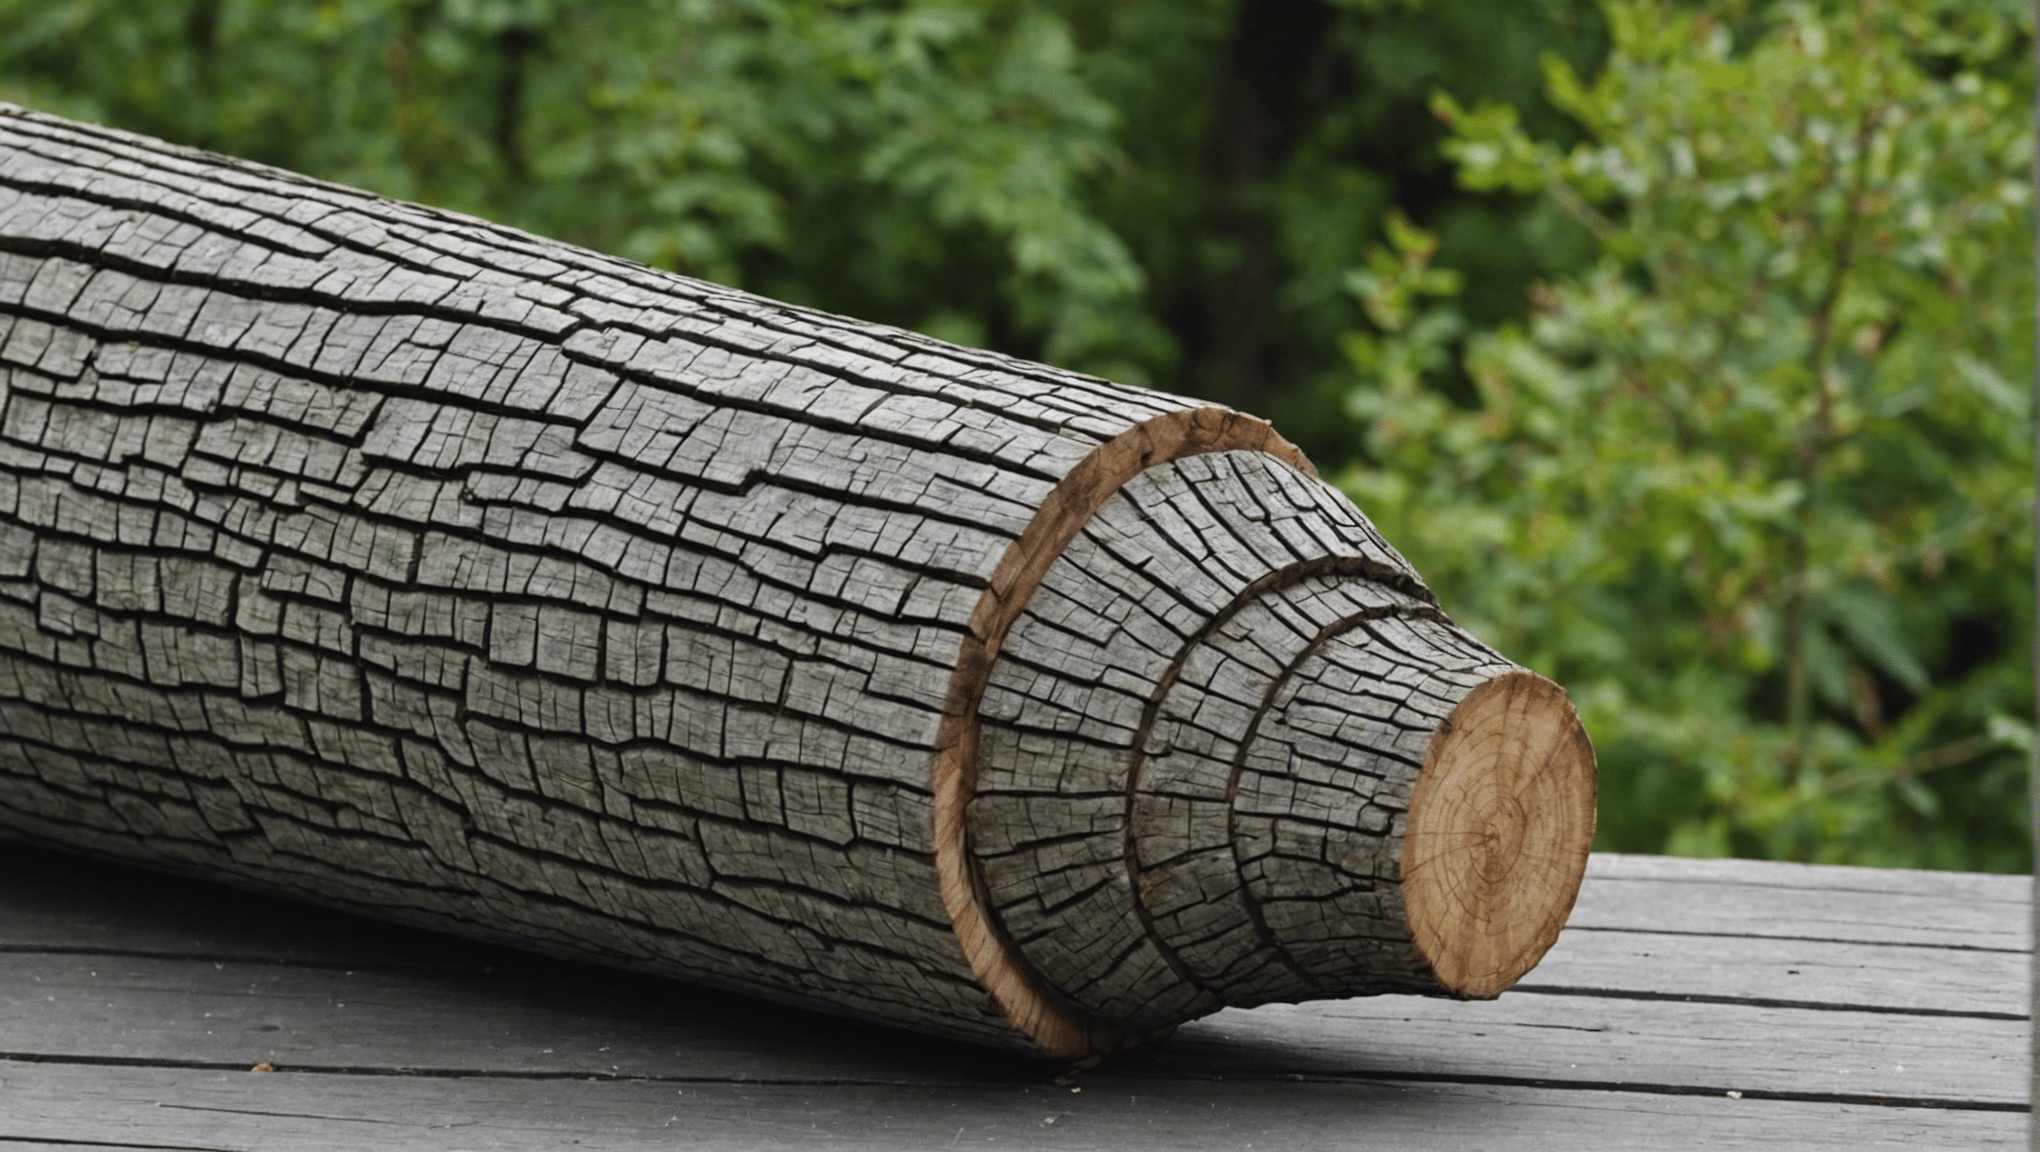 découvrez les avantages de la pierre ollaire pour votre poêle à bois, un matériau naturel qui assure une combustion efficace et une diffusion longue et constante de la chaleur dans votre intérieur.